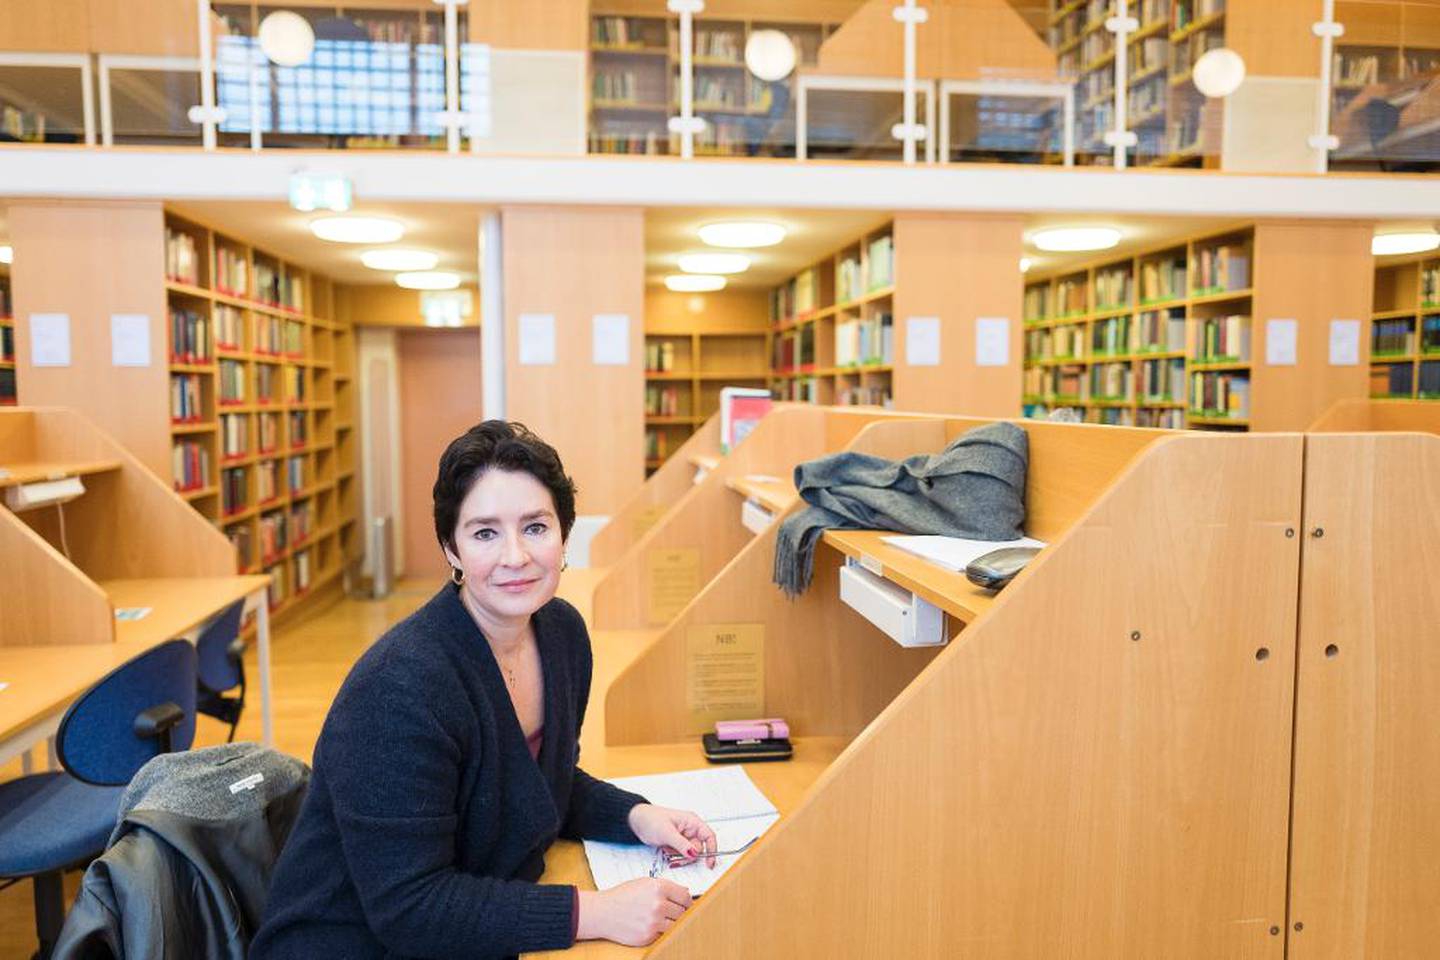 Veronica Orderud studerer teologi på Universitetet i Oslo. – Jeg liker meg på lesesalen, jeg. Bibliotekaren er så hyggelig, sier hun.